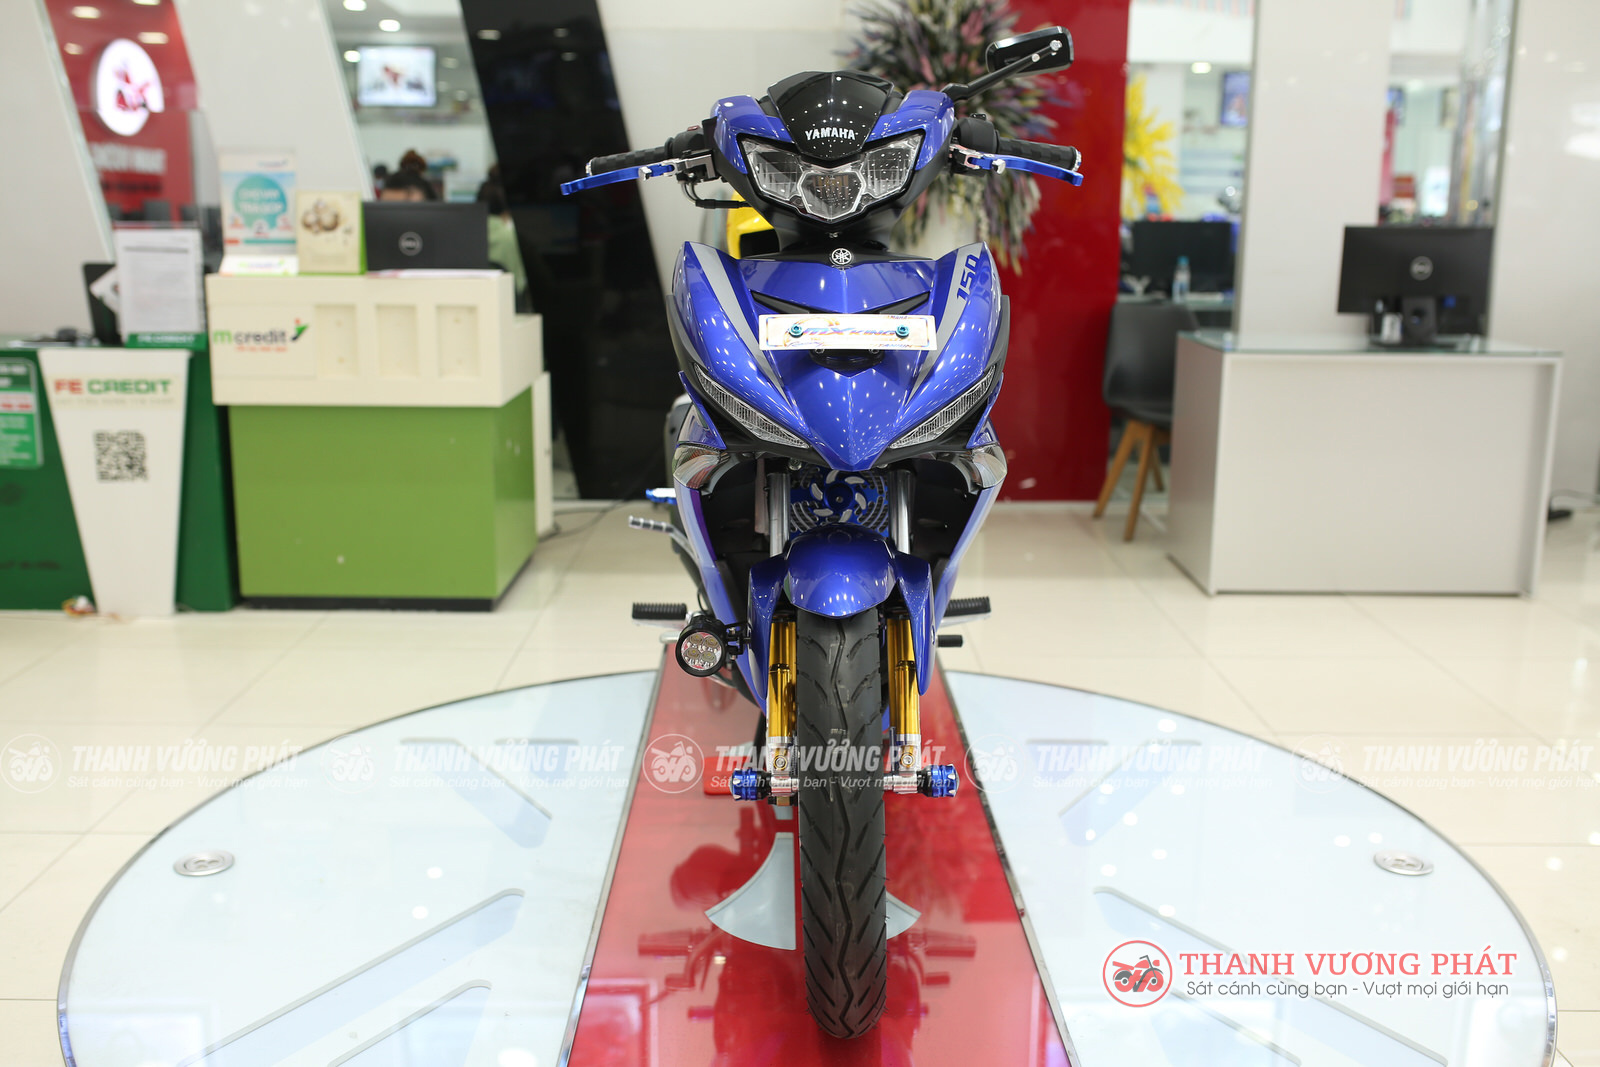 Cận cảnh Yamaha Exciter 150 bản nhập khẩu nguyên chiếc về Việt Nam   Autozonevn